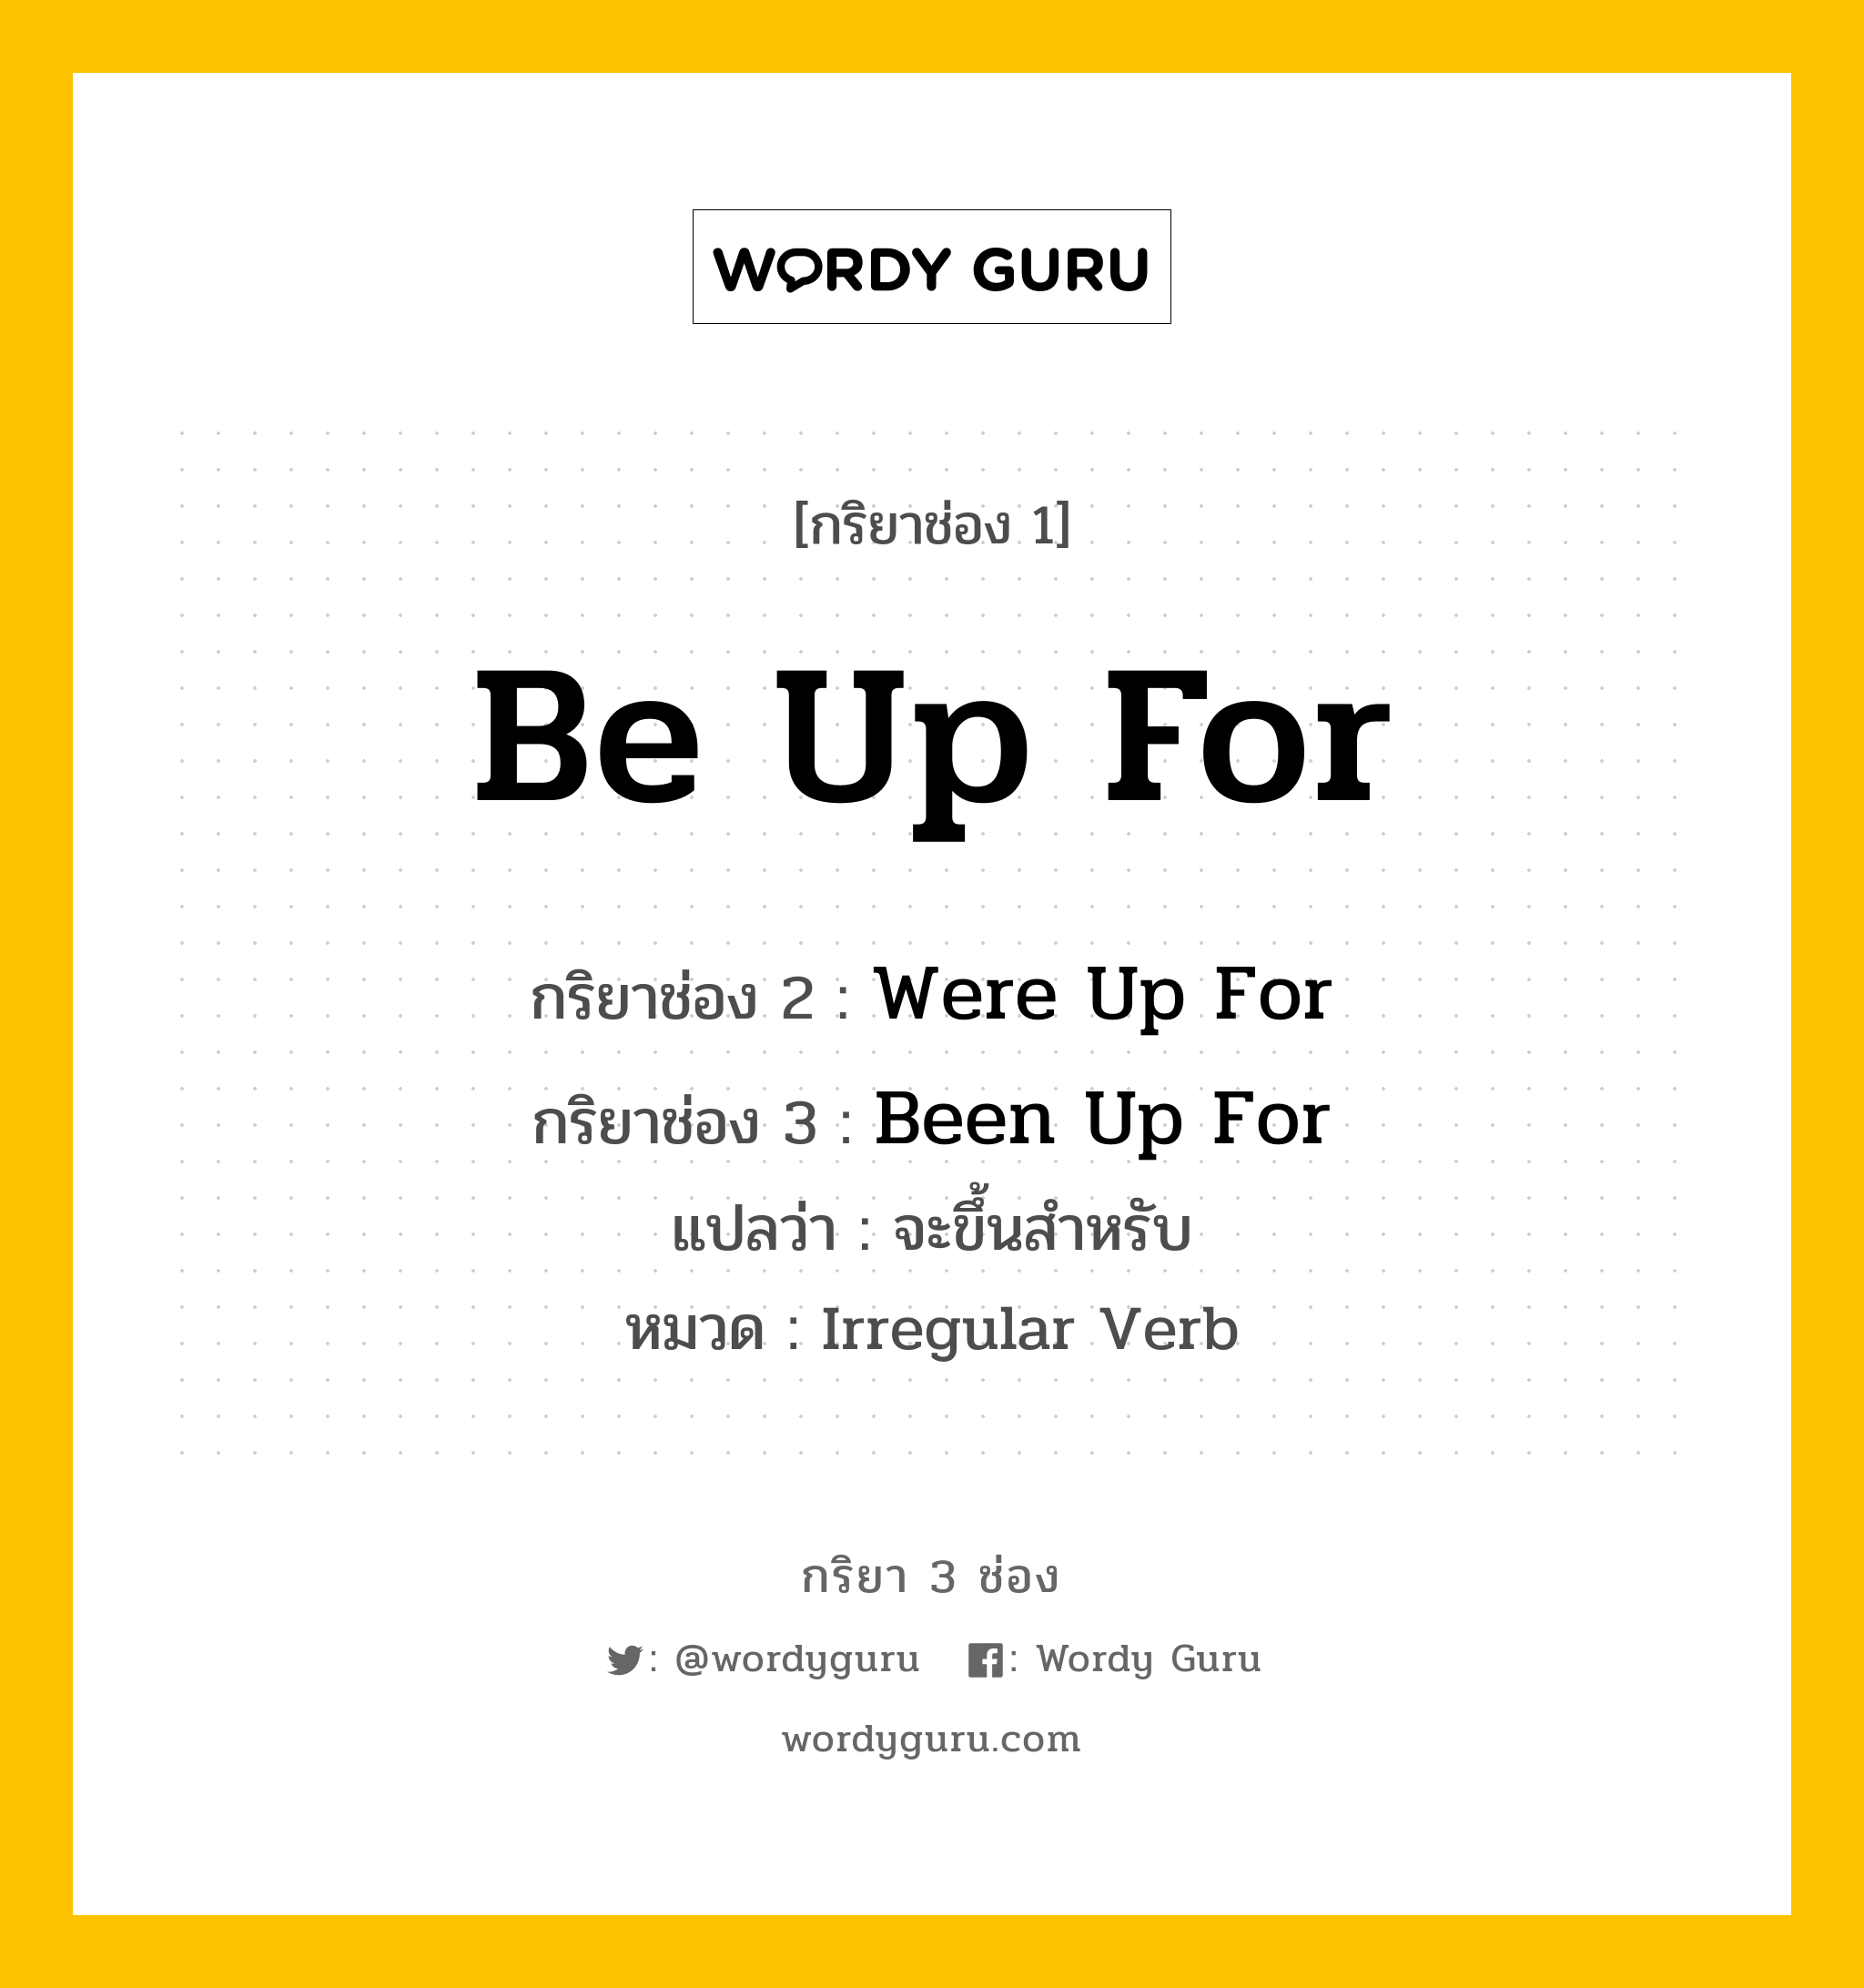 กริยา 3 ช่อง: Be Up For ช่อง 2 Be Up For ช่อง 3 คืออะไร, กริยาช่อง 1 Be Up For กริยาช่อง 2 Were Up For กริยาช่อง 3 Been Up For แปลว่า จะขึ้นสำหรับ หมวด Irregular Verb หมวด Irregular Verb